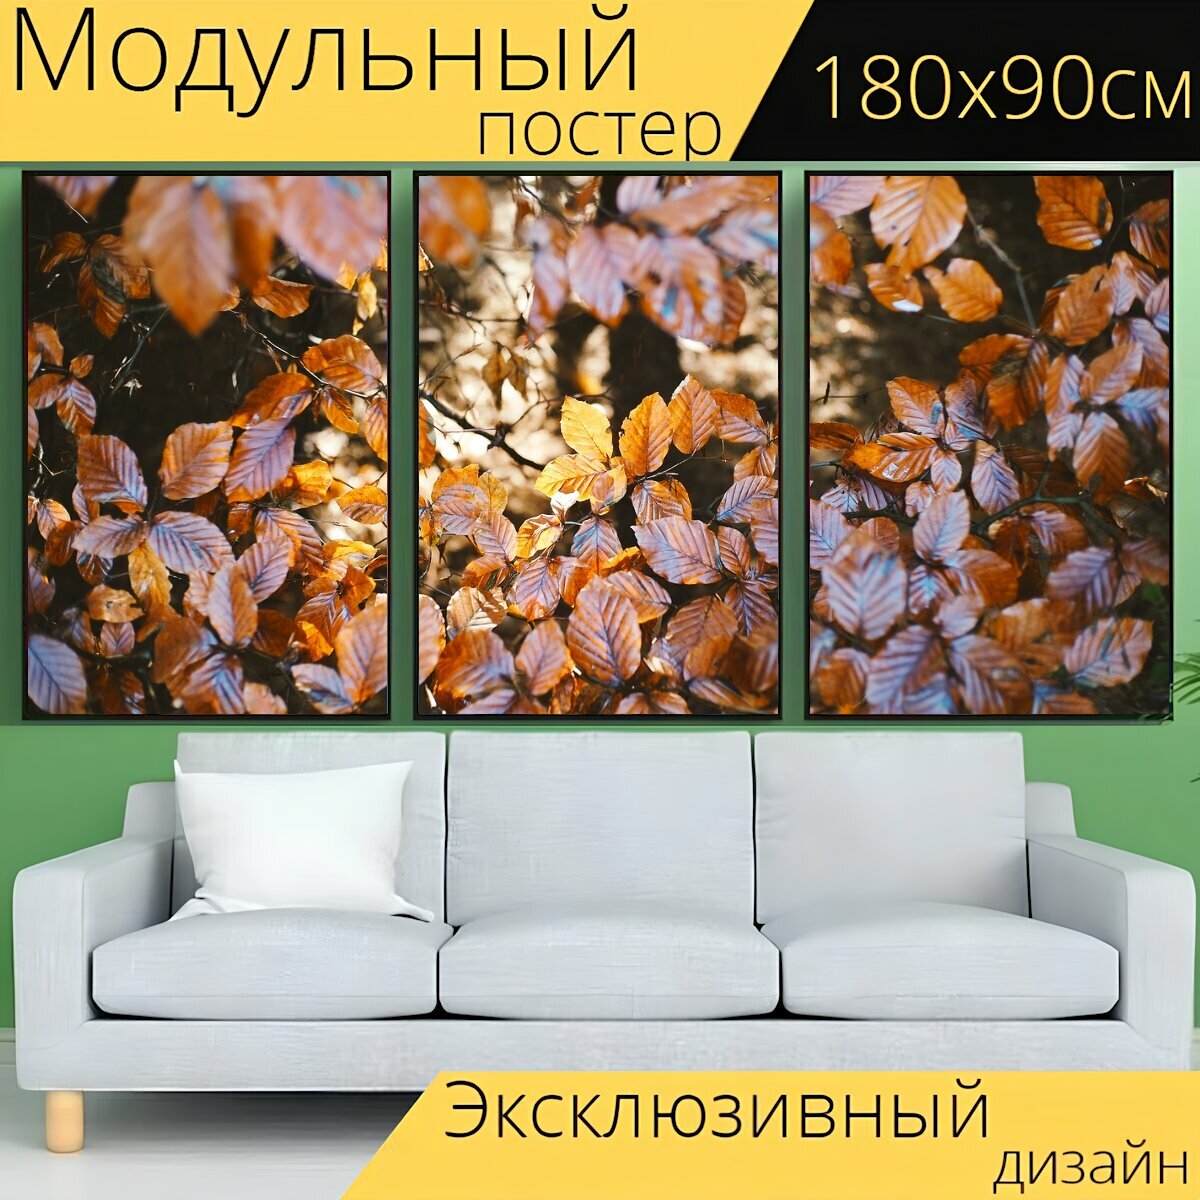 Модульный постер "Осень, листва, листья" 180 x 90 см. для интерьера